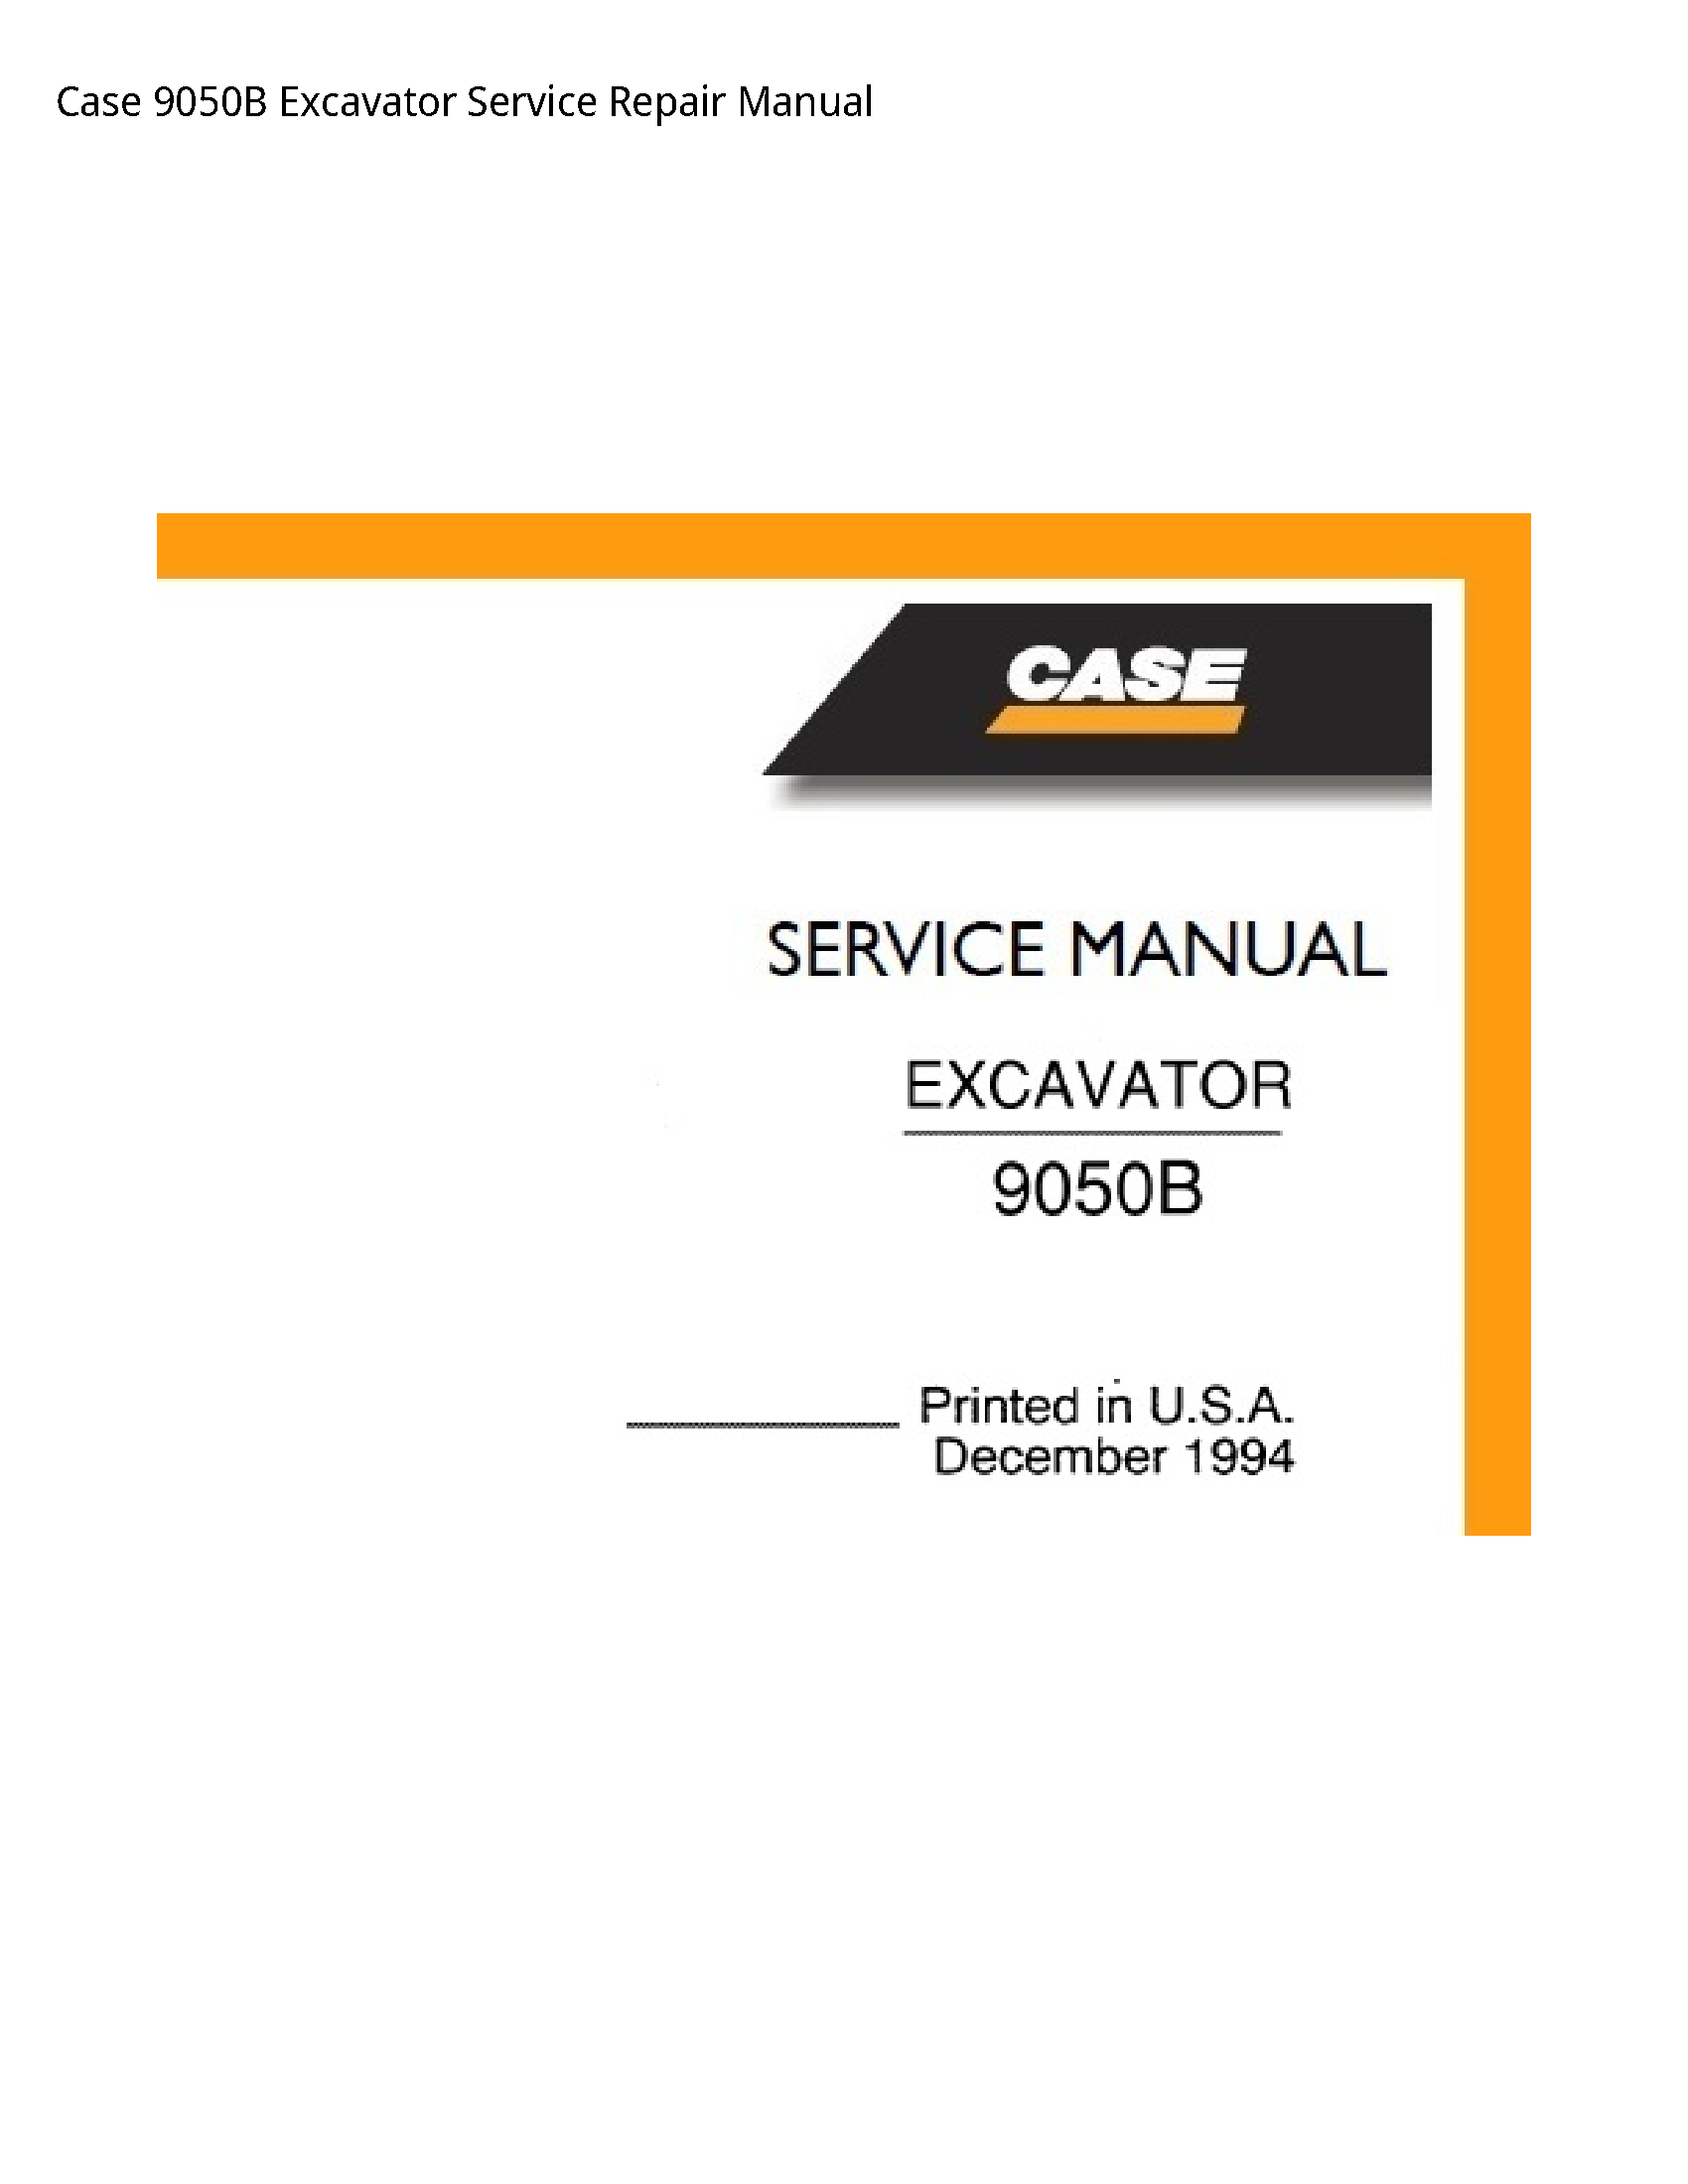 Case/Case IH 9050B Excavator manual